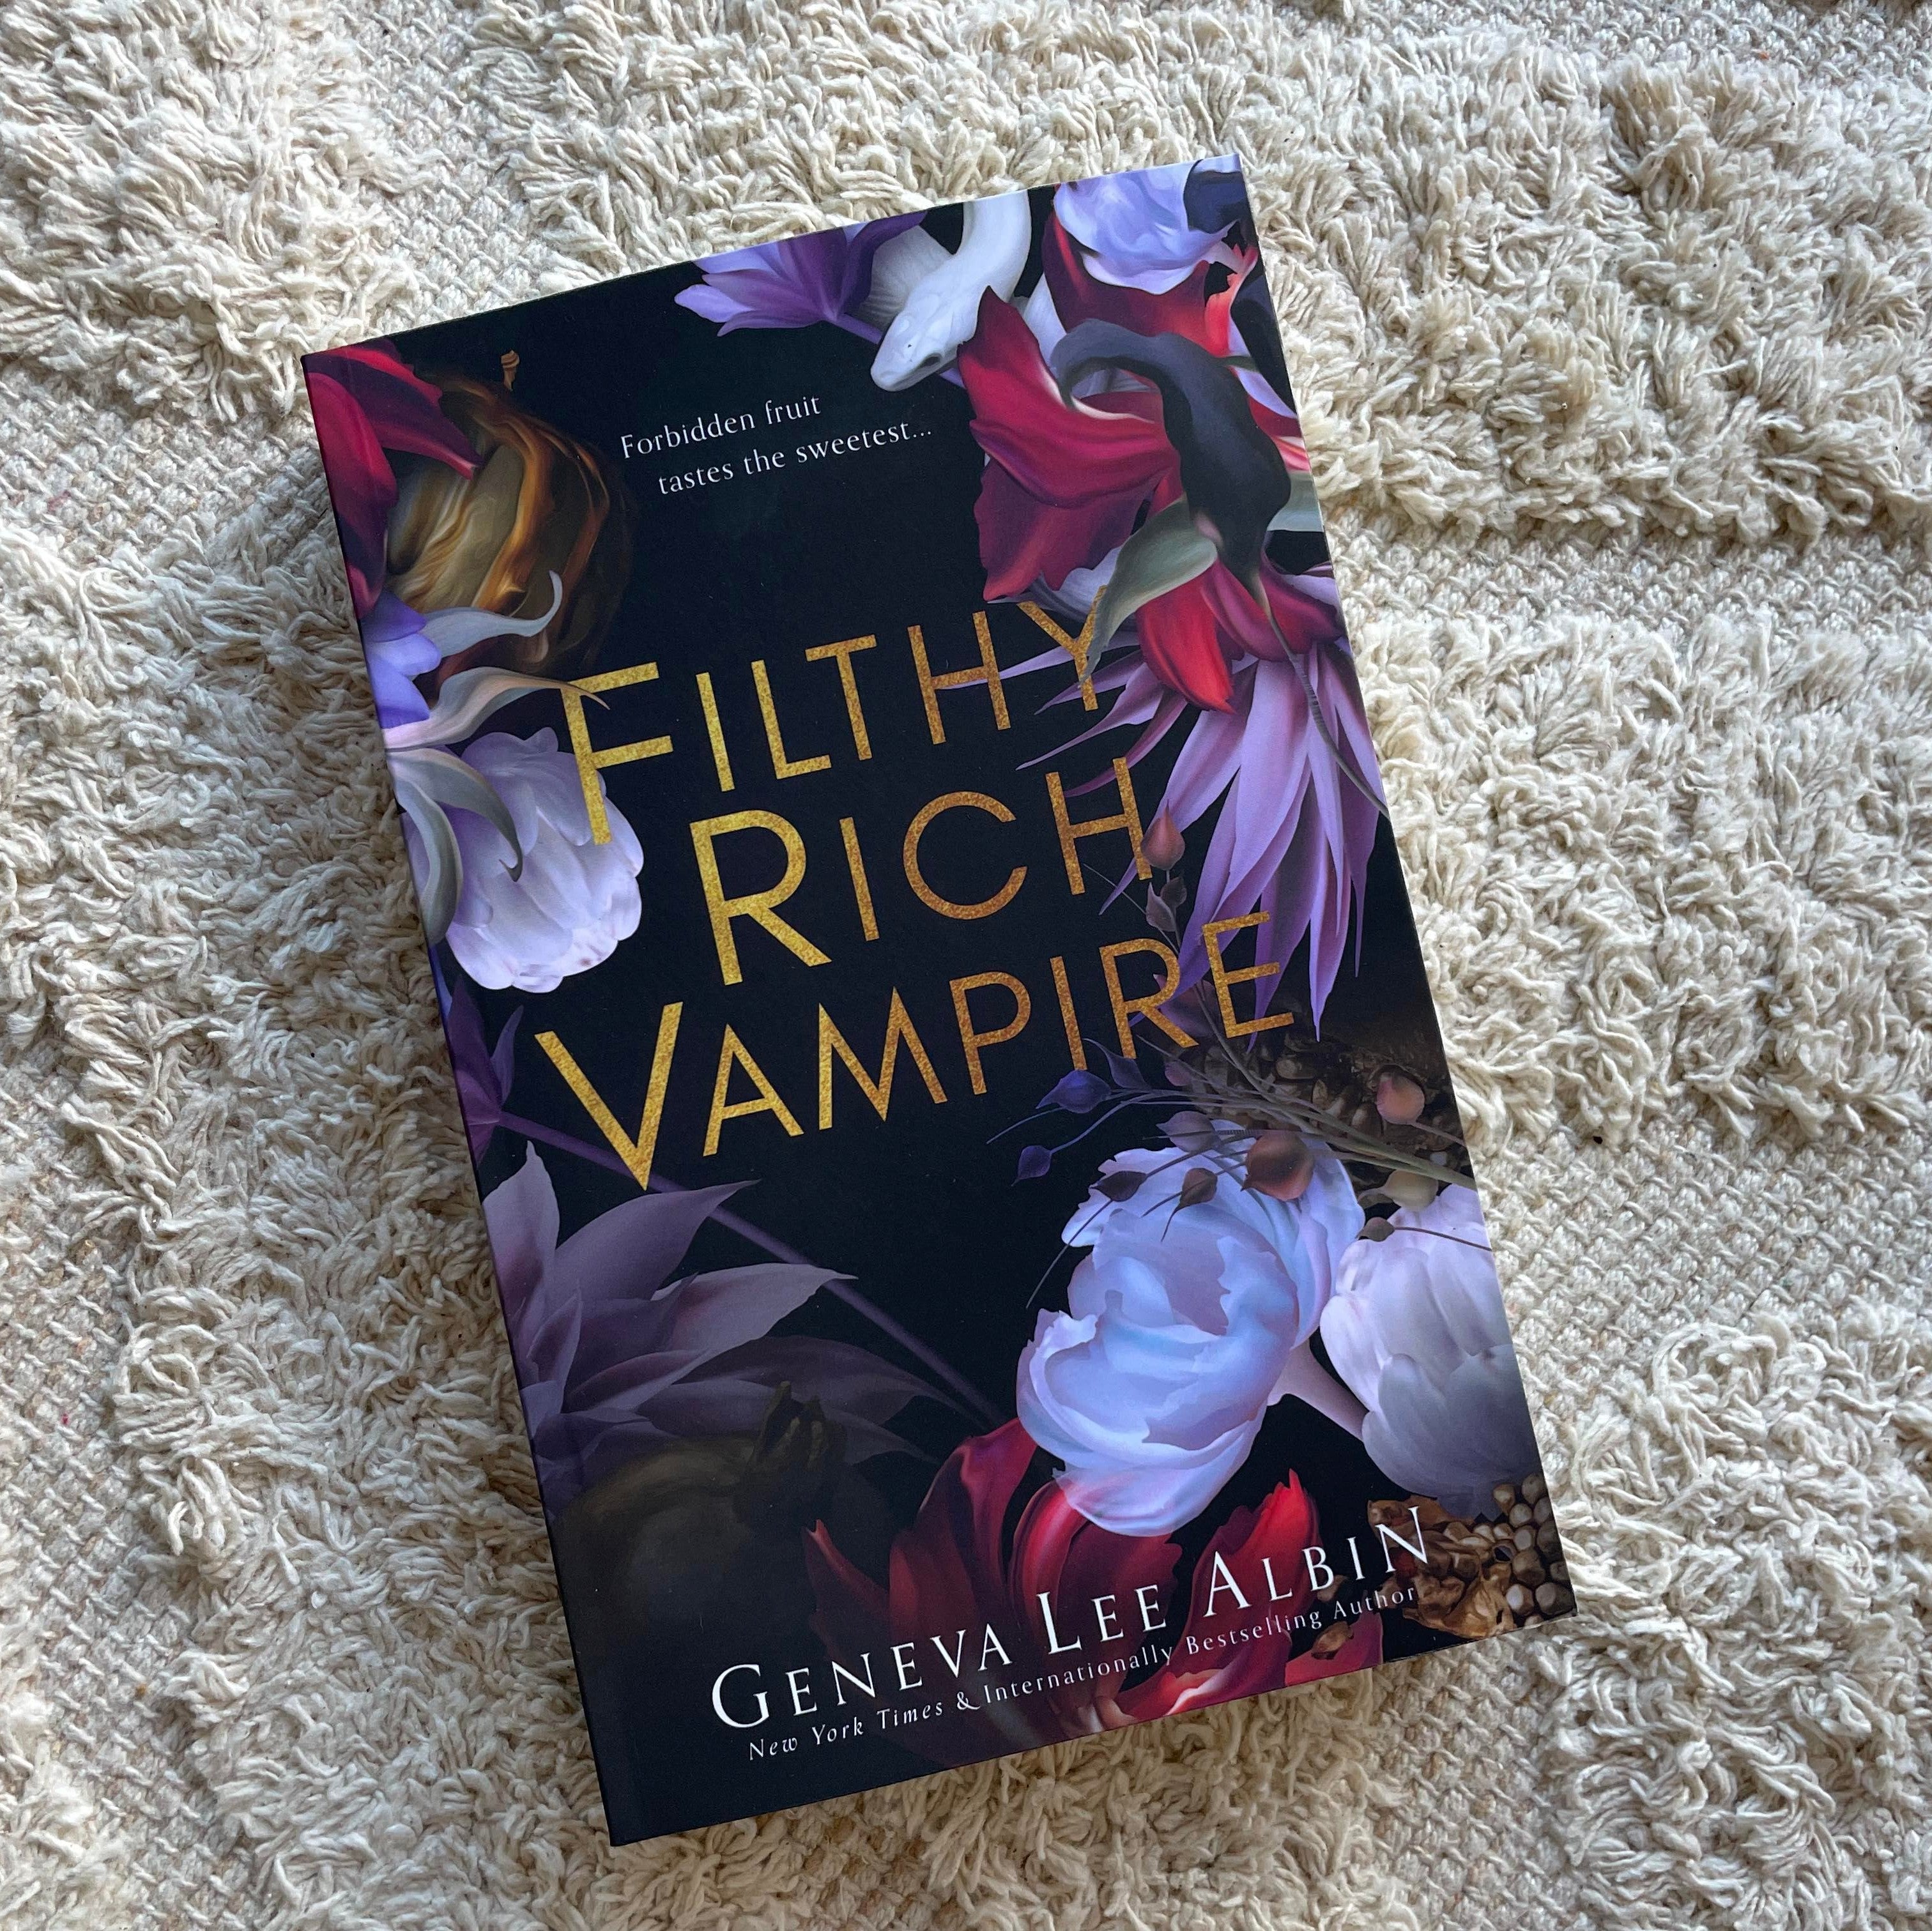 Filthy Rich Vampires by Gevena Lee